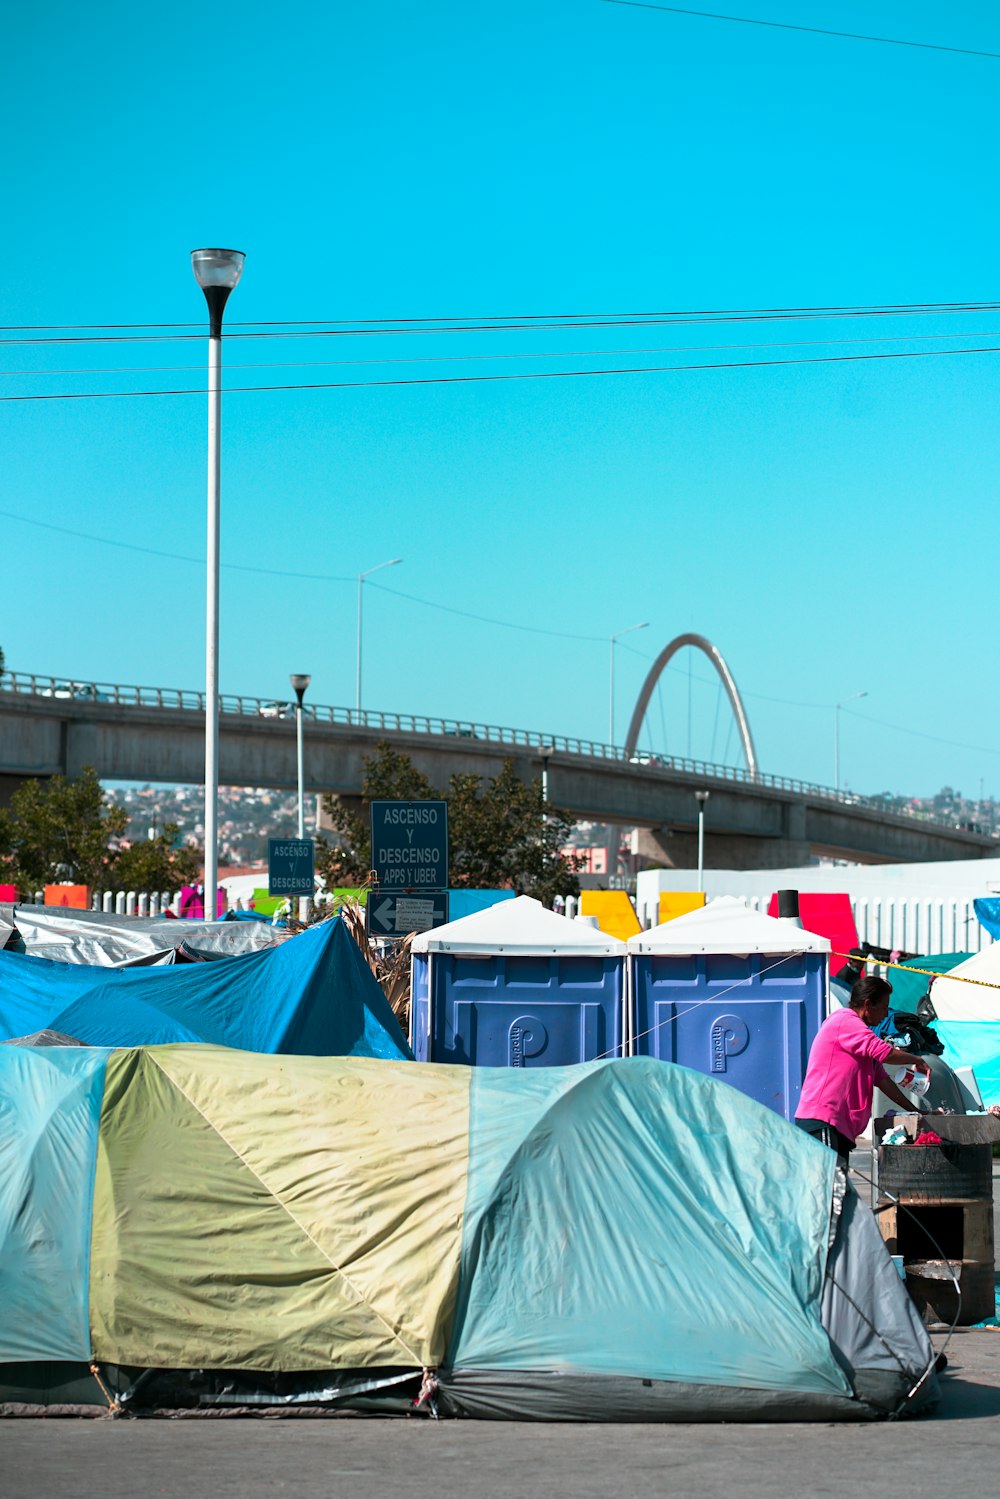 Menschen, die tagsüber auf Campingstühlen in der Nähe von Blue Tent sitzen